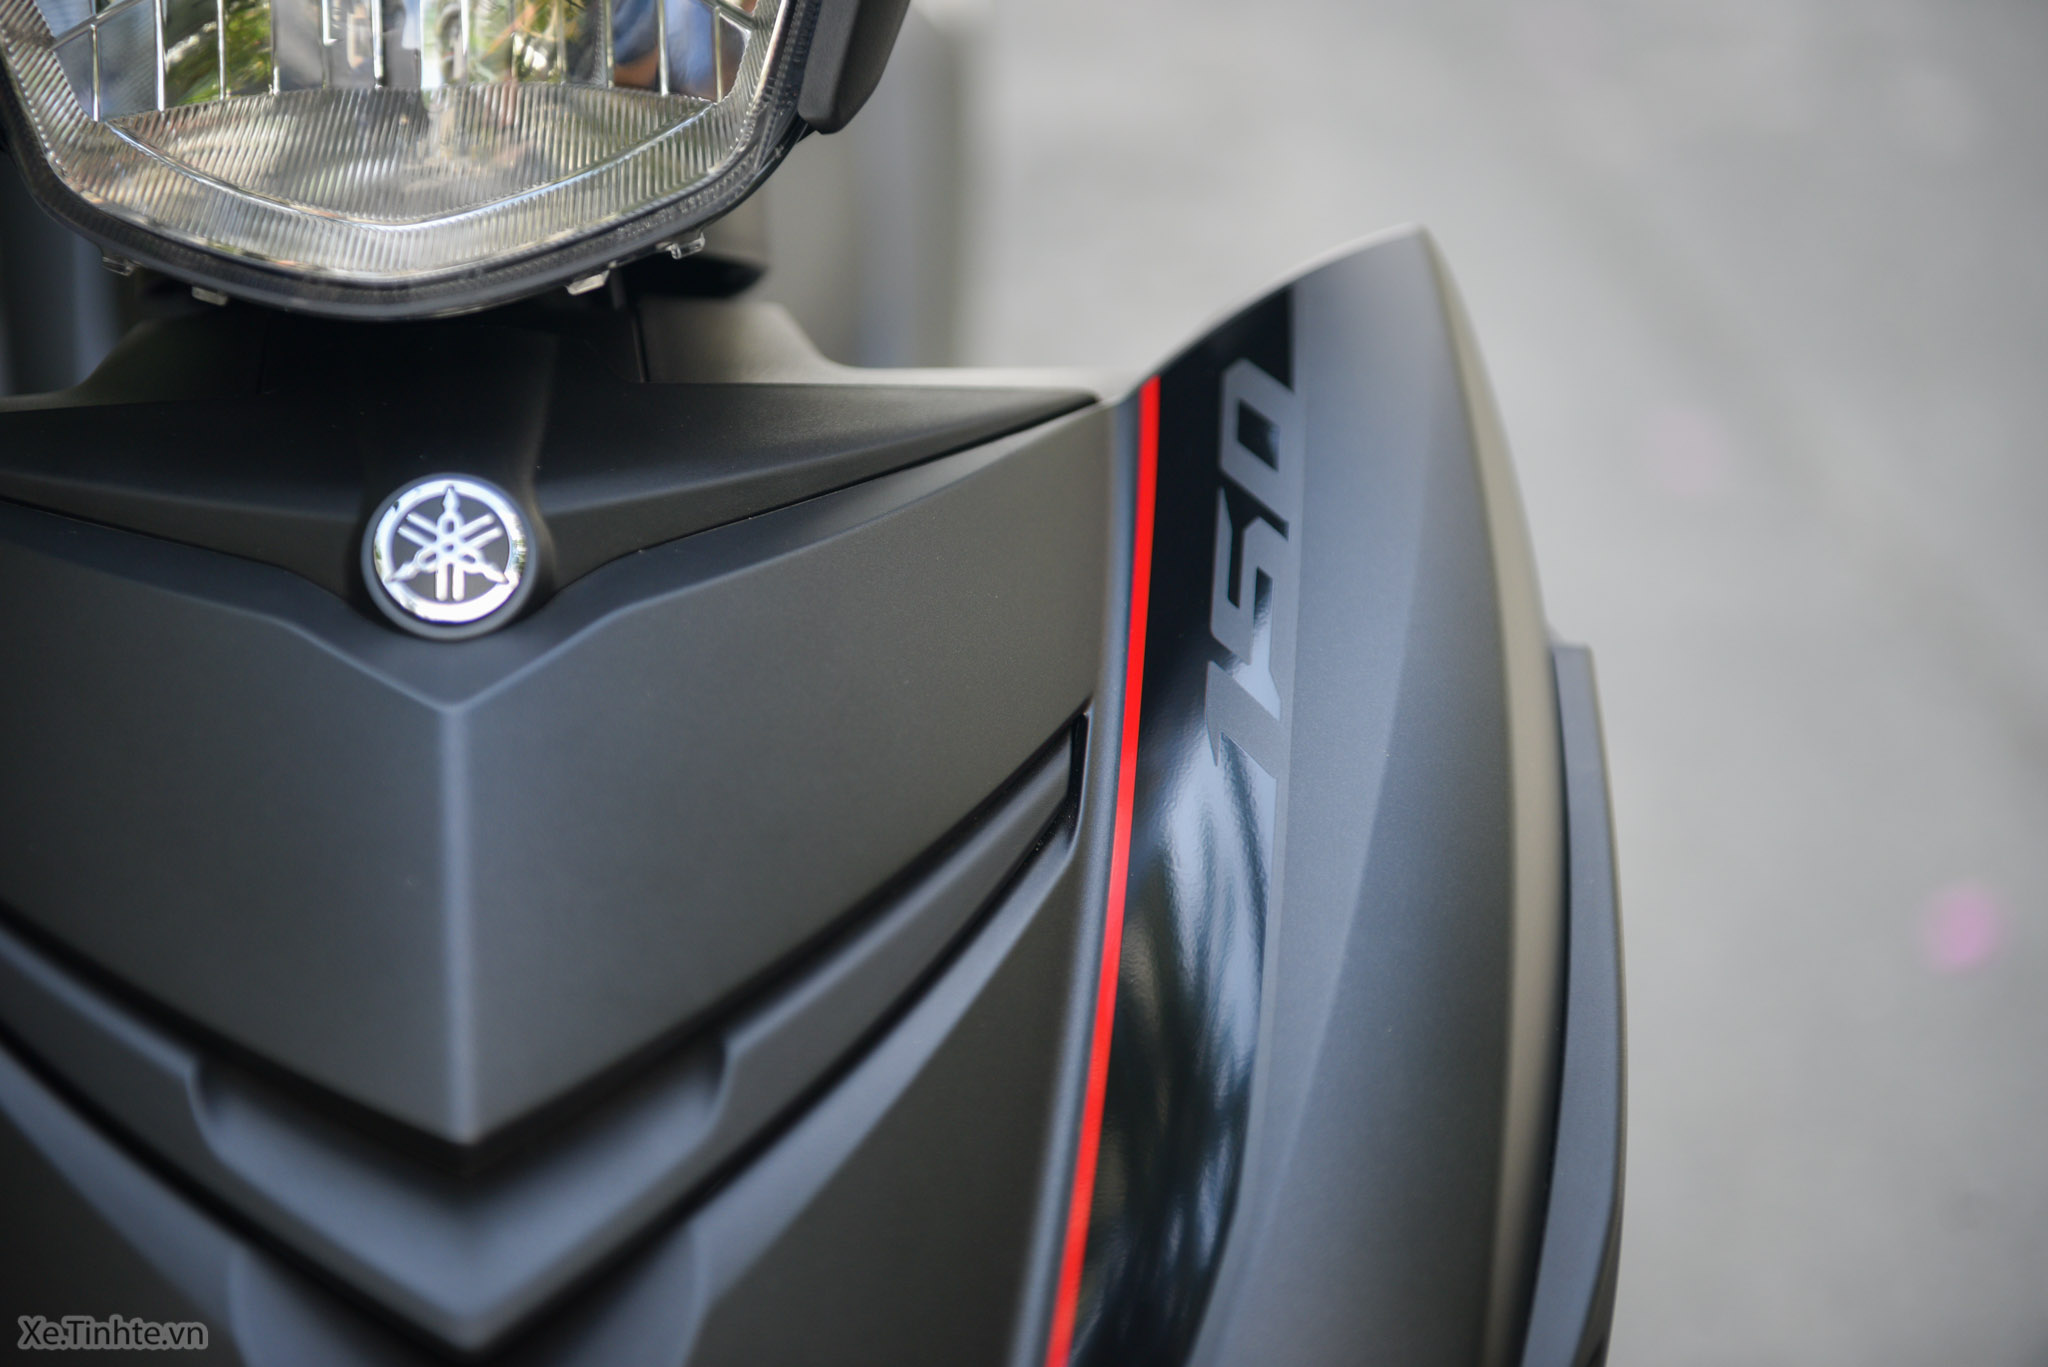 Được lột xác hoàn toàn với màu đen nhám, Yamaha Exciter 150 sẽ khiến bạn không thể rời mắt. Xem ngay hình ảnh liên quan để chứng kiến sự thể thao và bề ngoài hầm hố của chiếc xe.